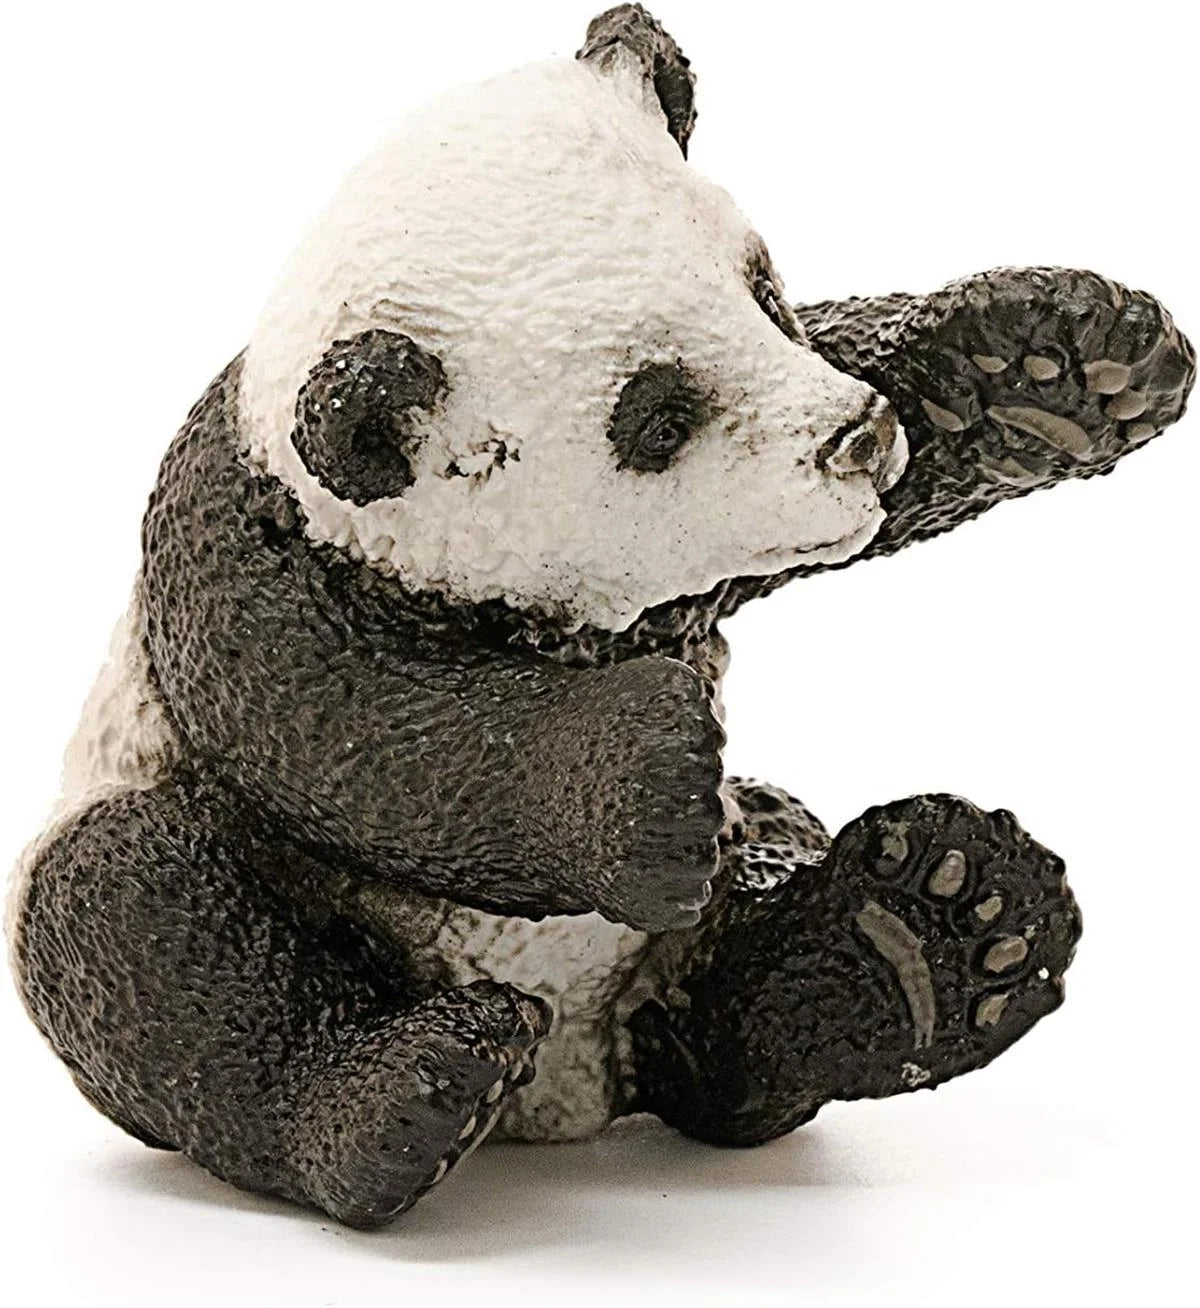 Schleich Panda Yavrusu 14734 | Toysall